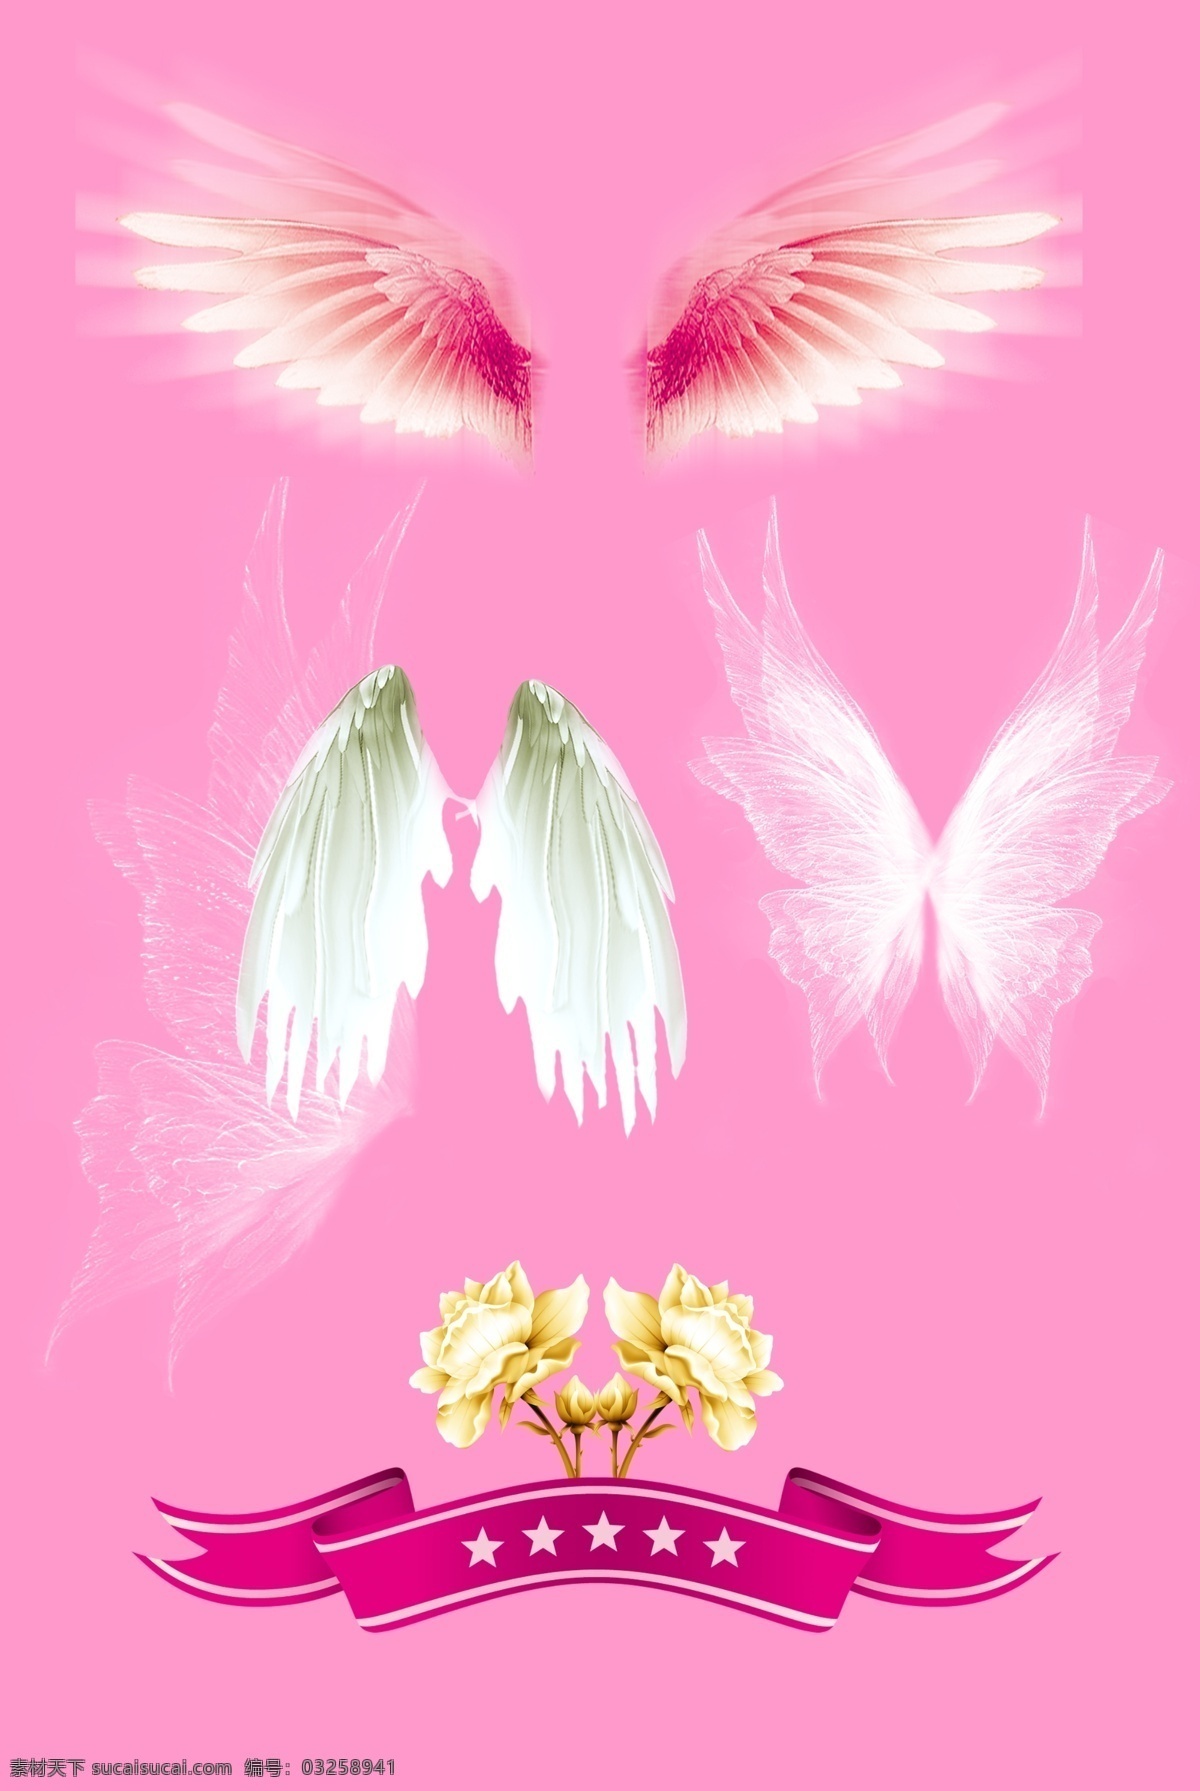 各种漂亮翅膀 粉色纯净背景 金色漂亮牡丹 红色弯曲丝带 天使翅膀 蝴蝶 状 透明 翅膀 粉色 温馨 浪漫 分层 源文件